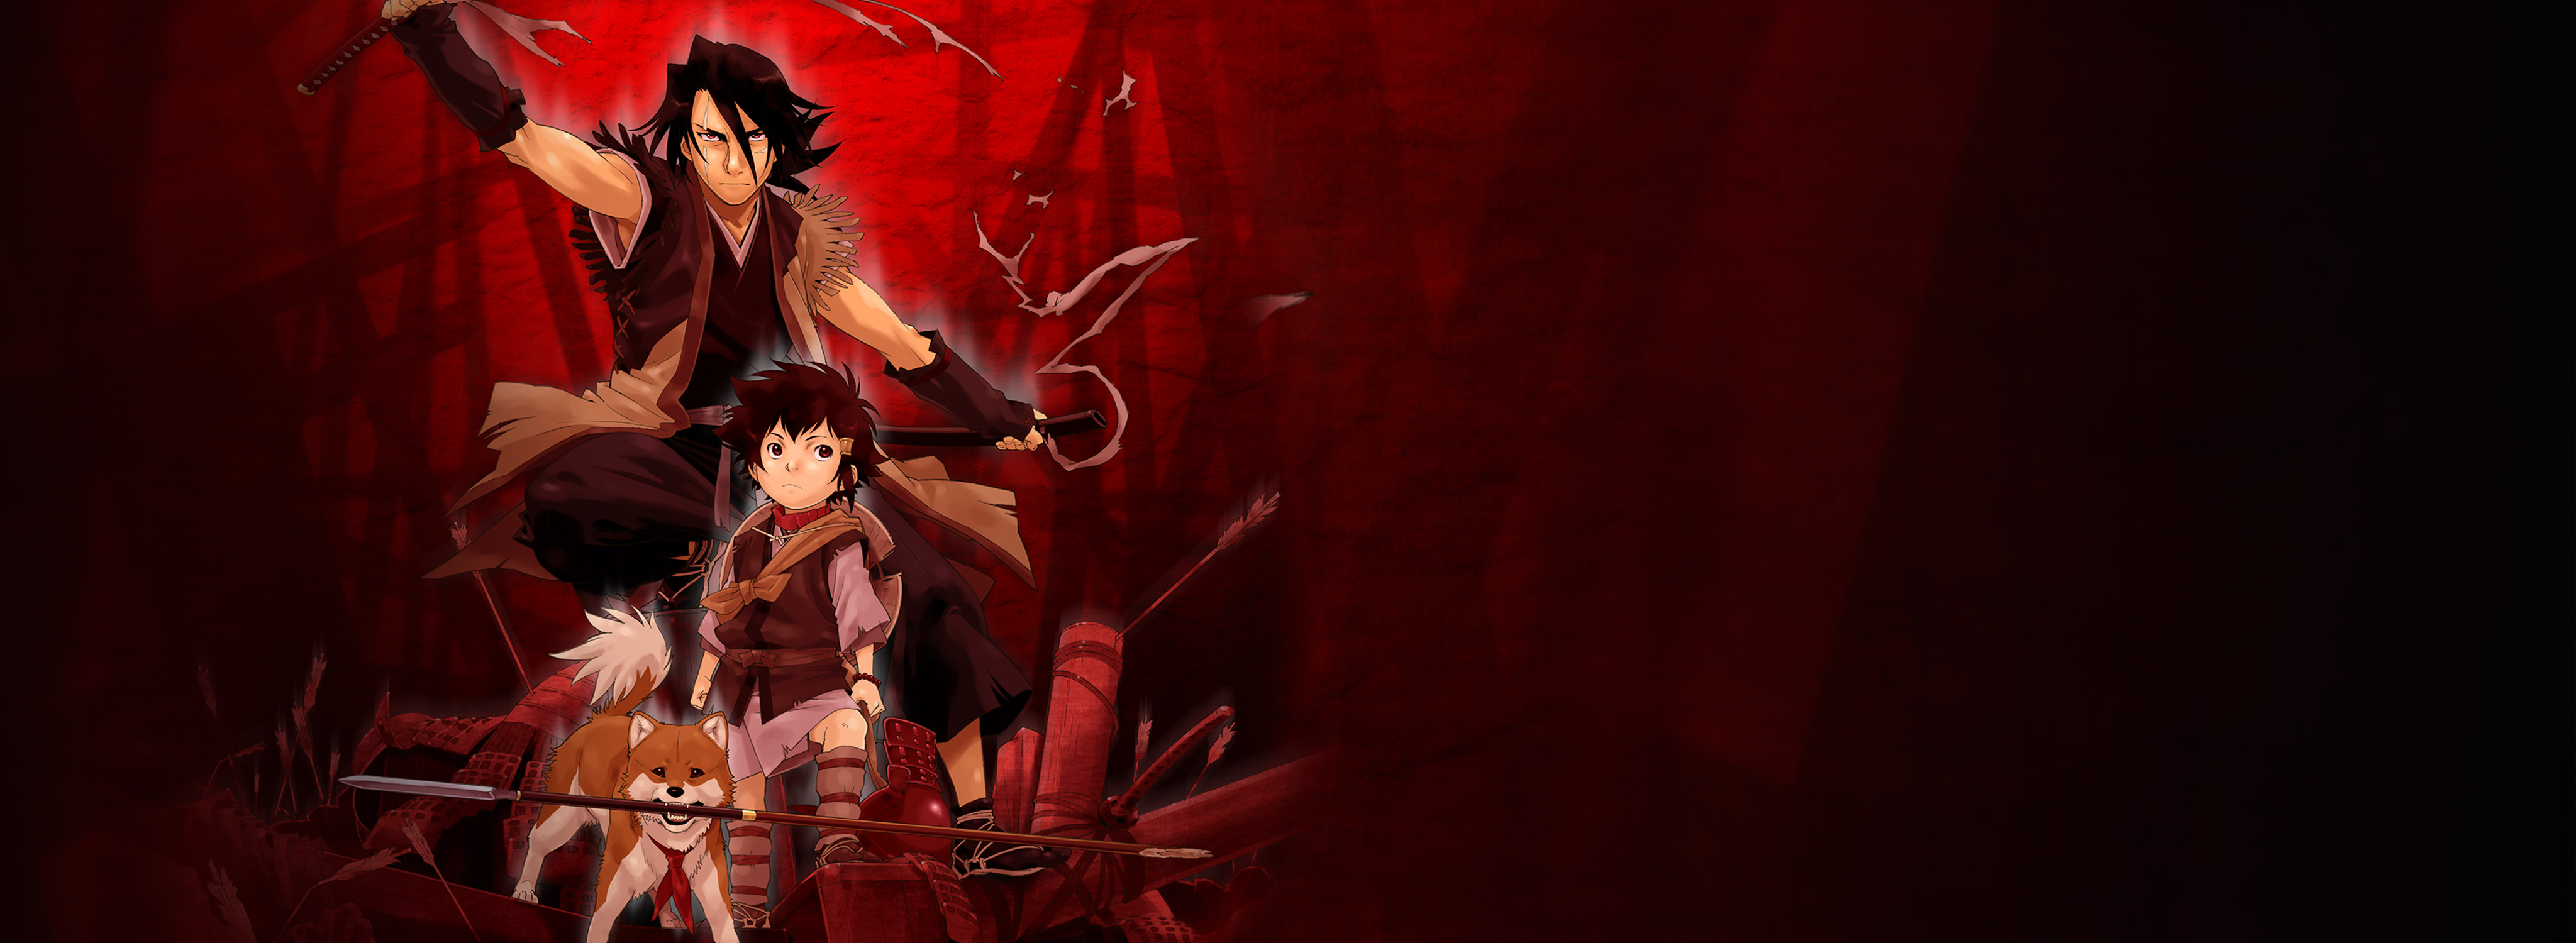 Anime Sword of the Stranger HD Wallpaper | Background Image